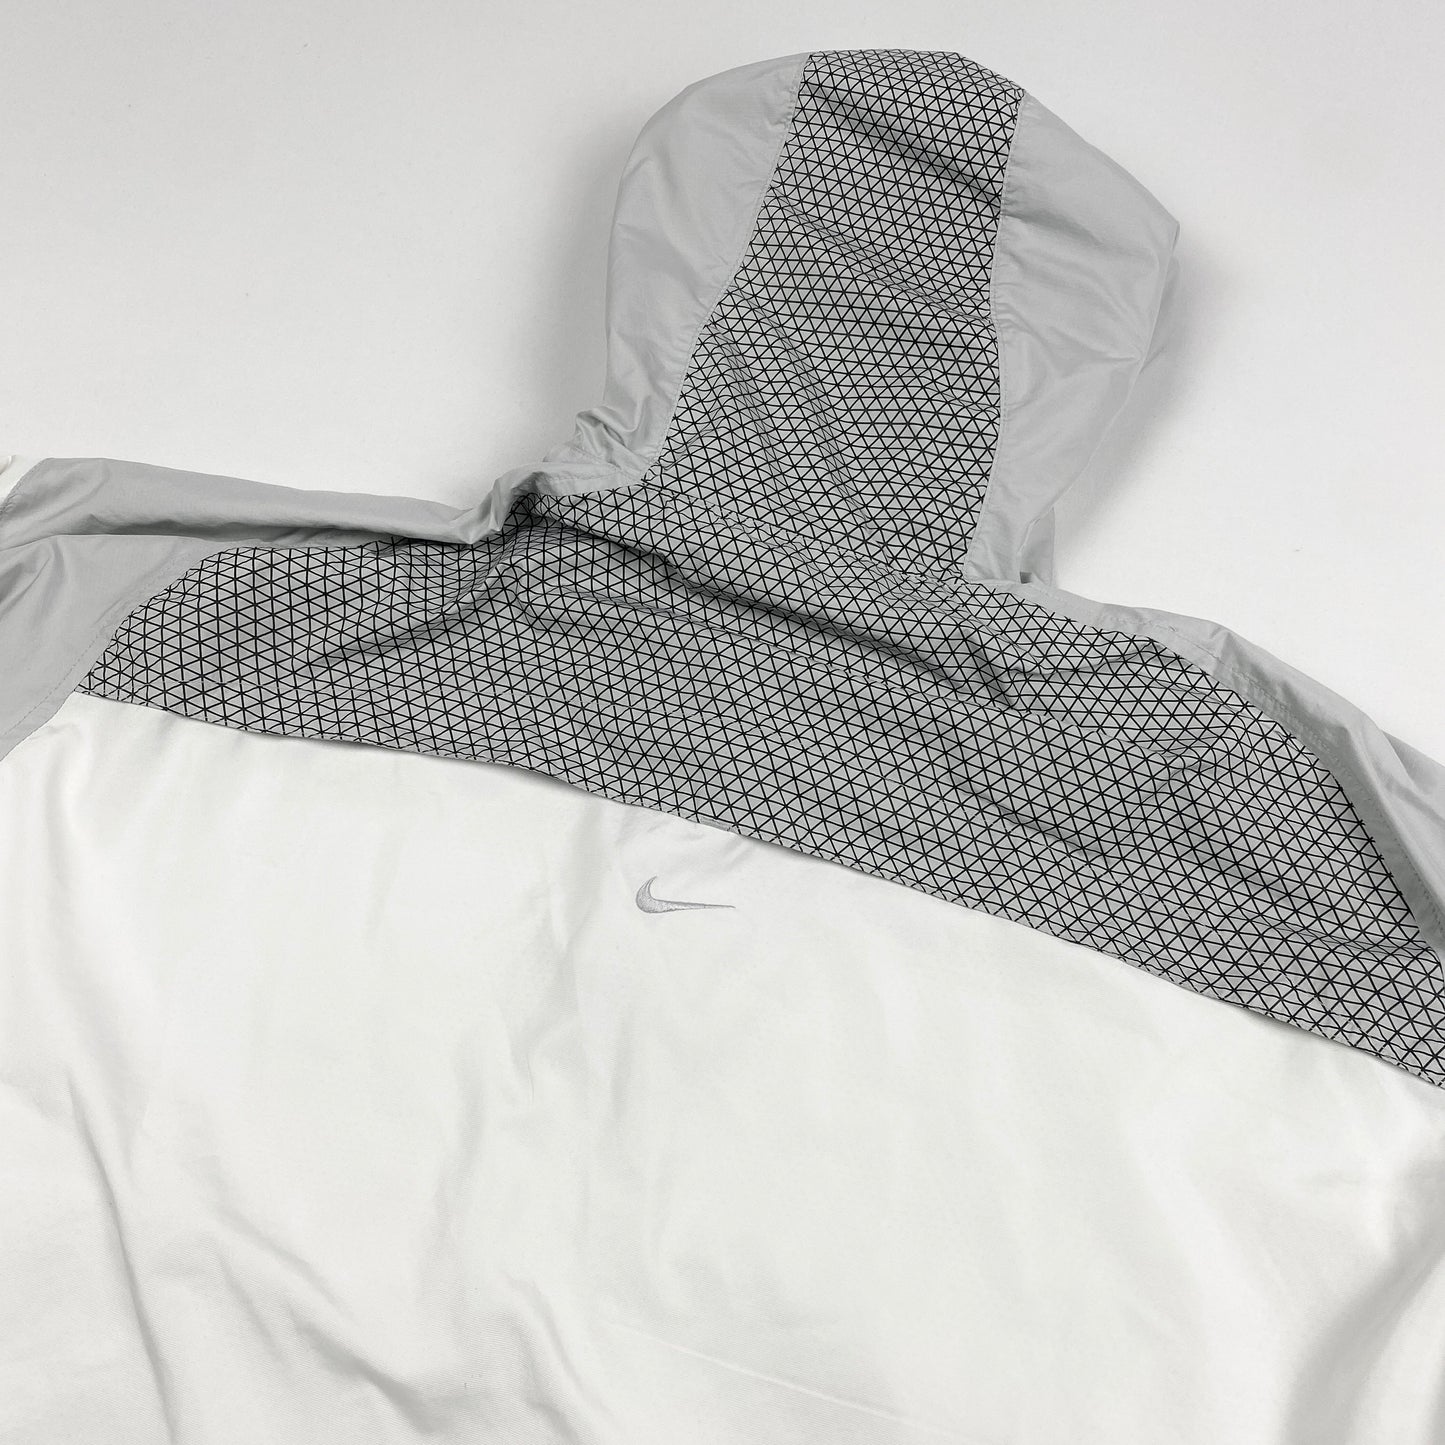 Vintage Nike SHOX Half-Zip Jacket